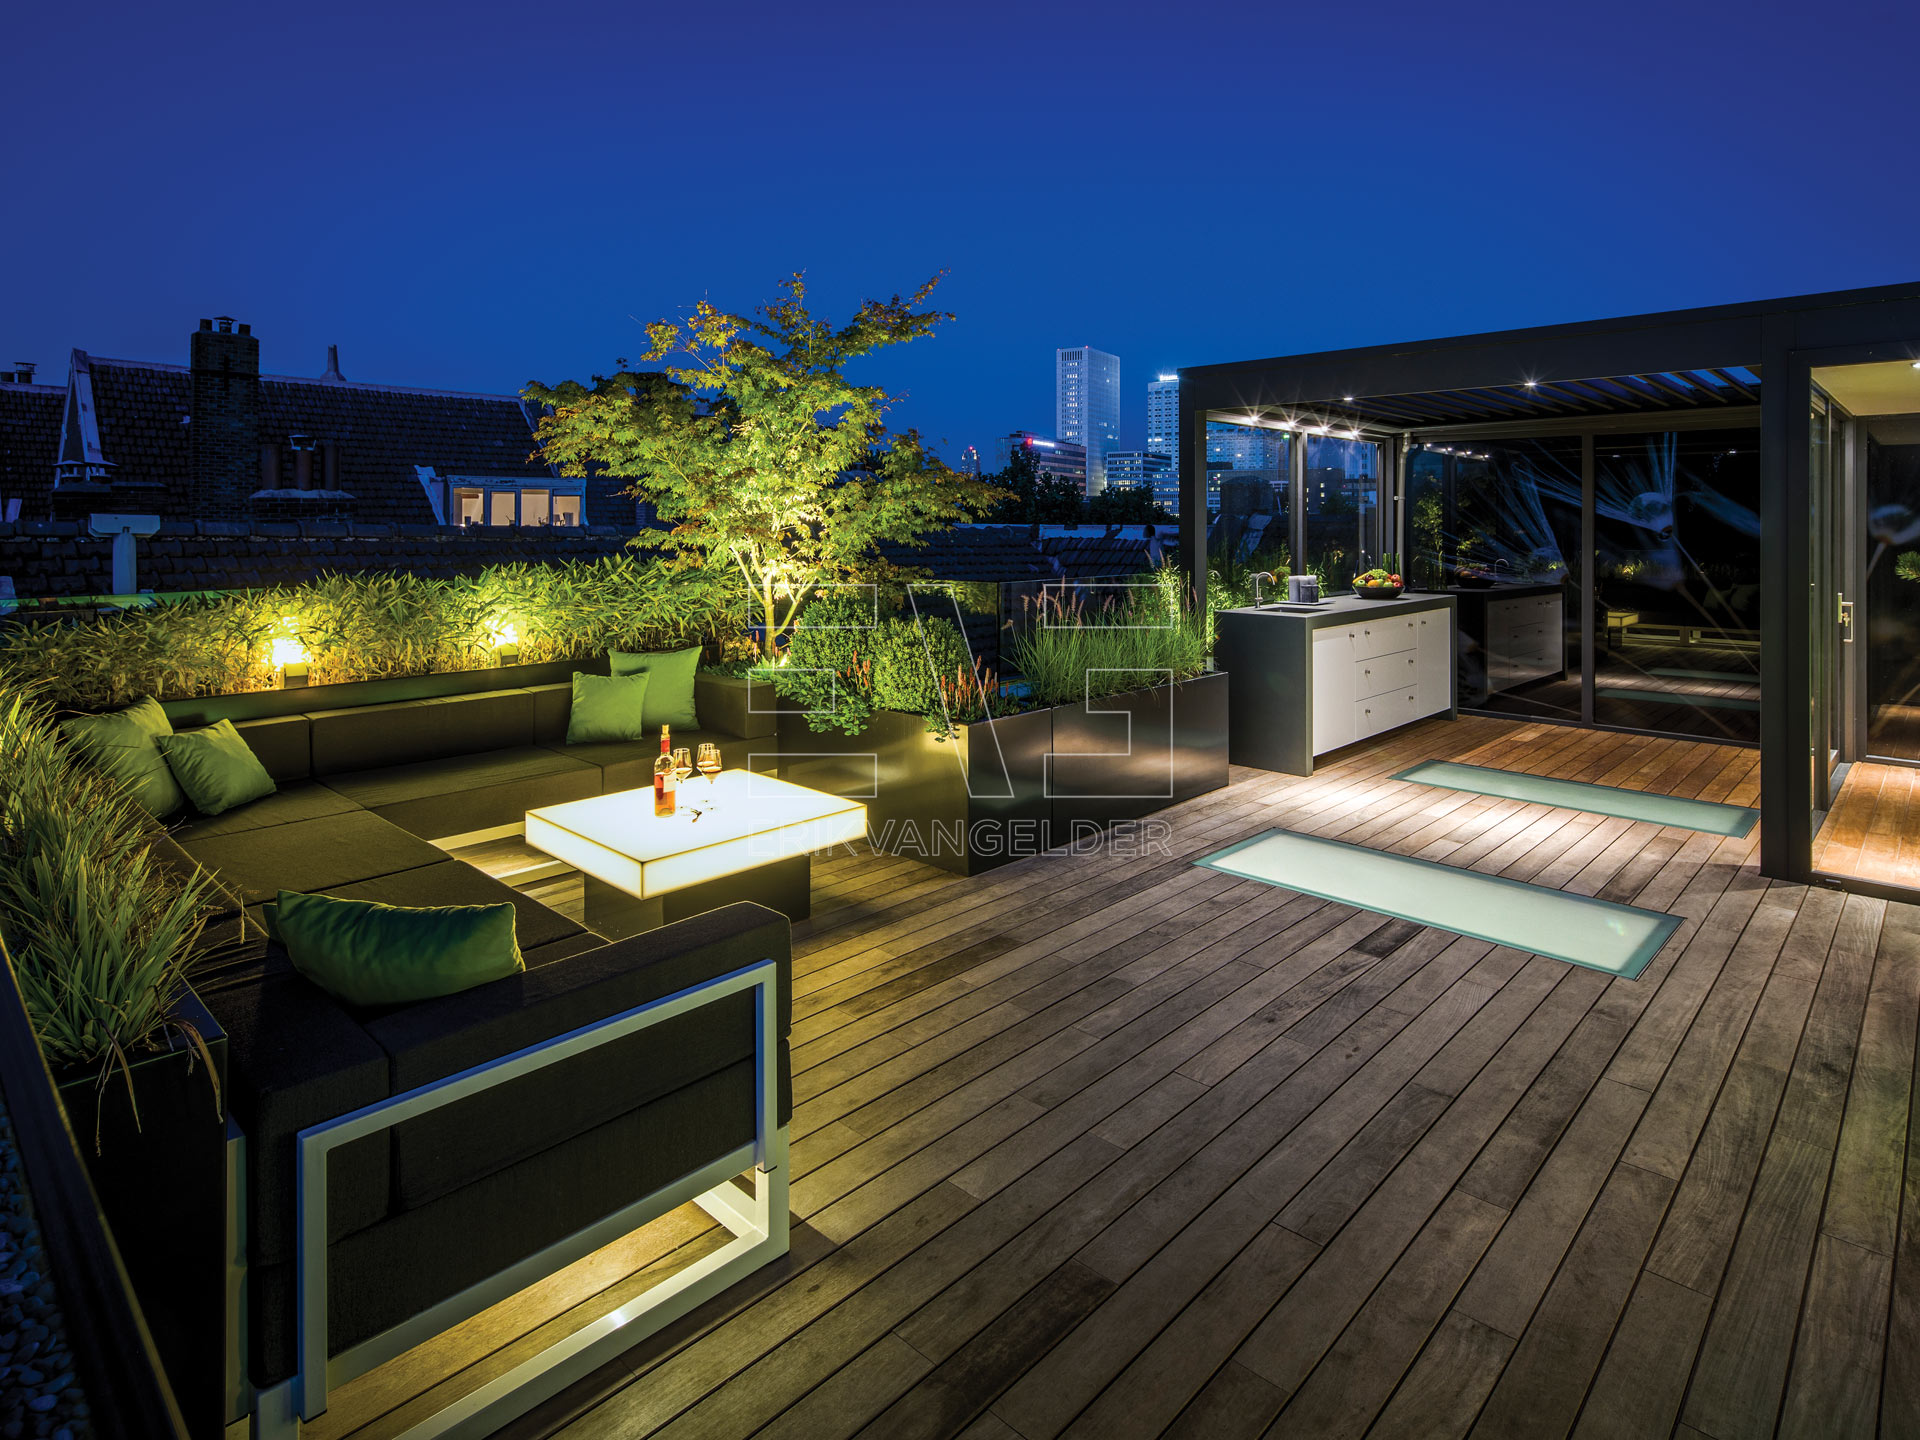 Sfeervol luxe dakterras roof garden met moderne overkapping buitenkeuken loungebank beplanting erikvangelder tuinarchitect tuindesign